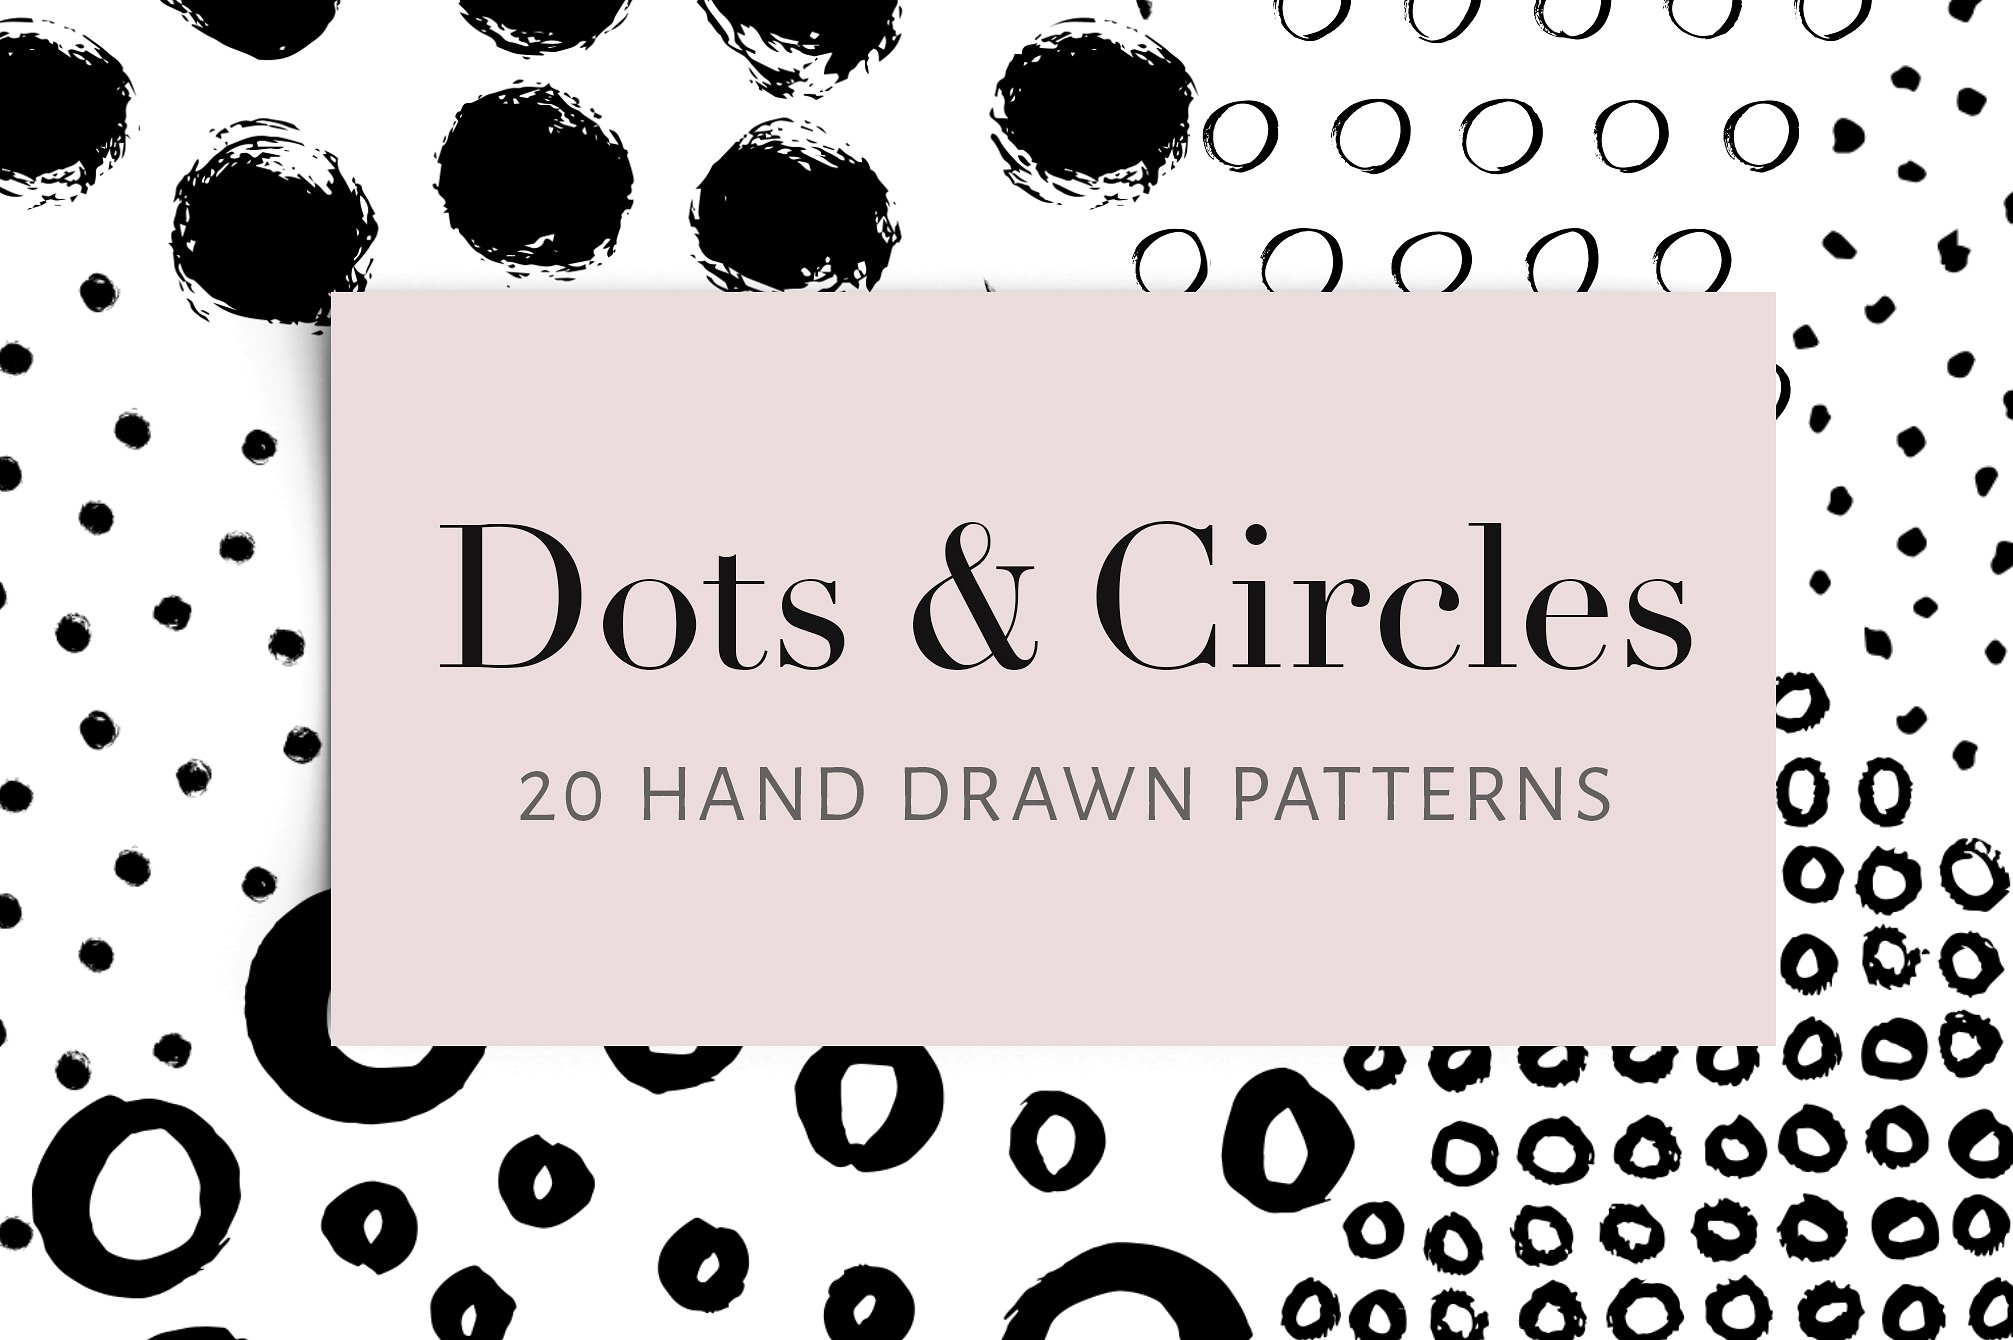 20组手工制作的墨点和墨迹EPS矢量图案 Dots and